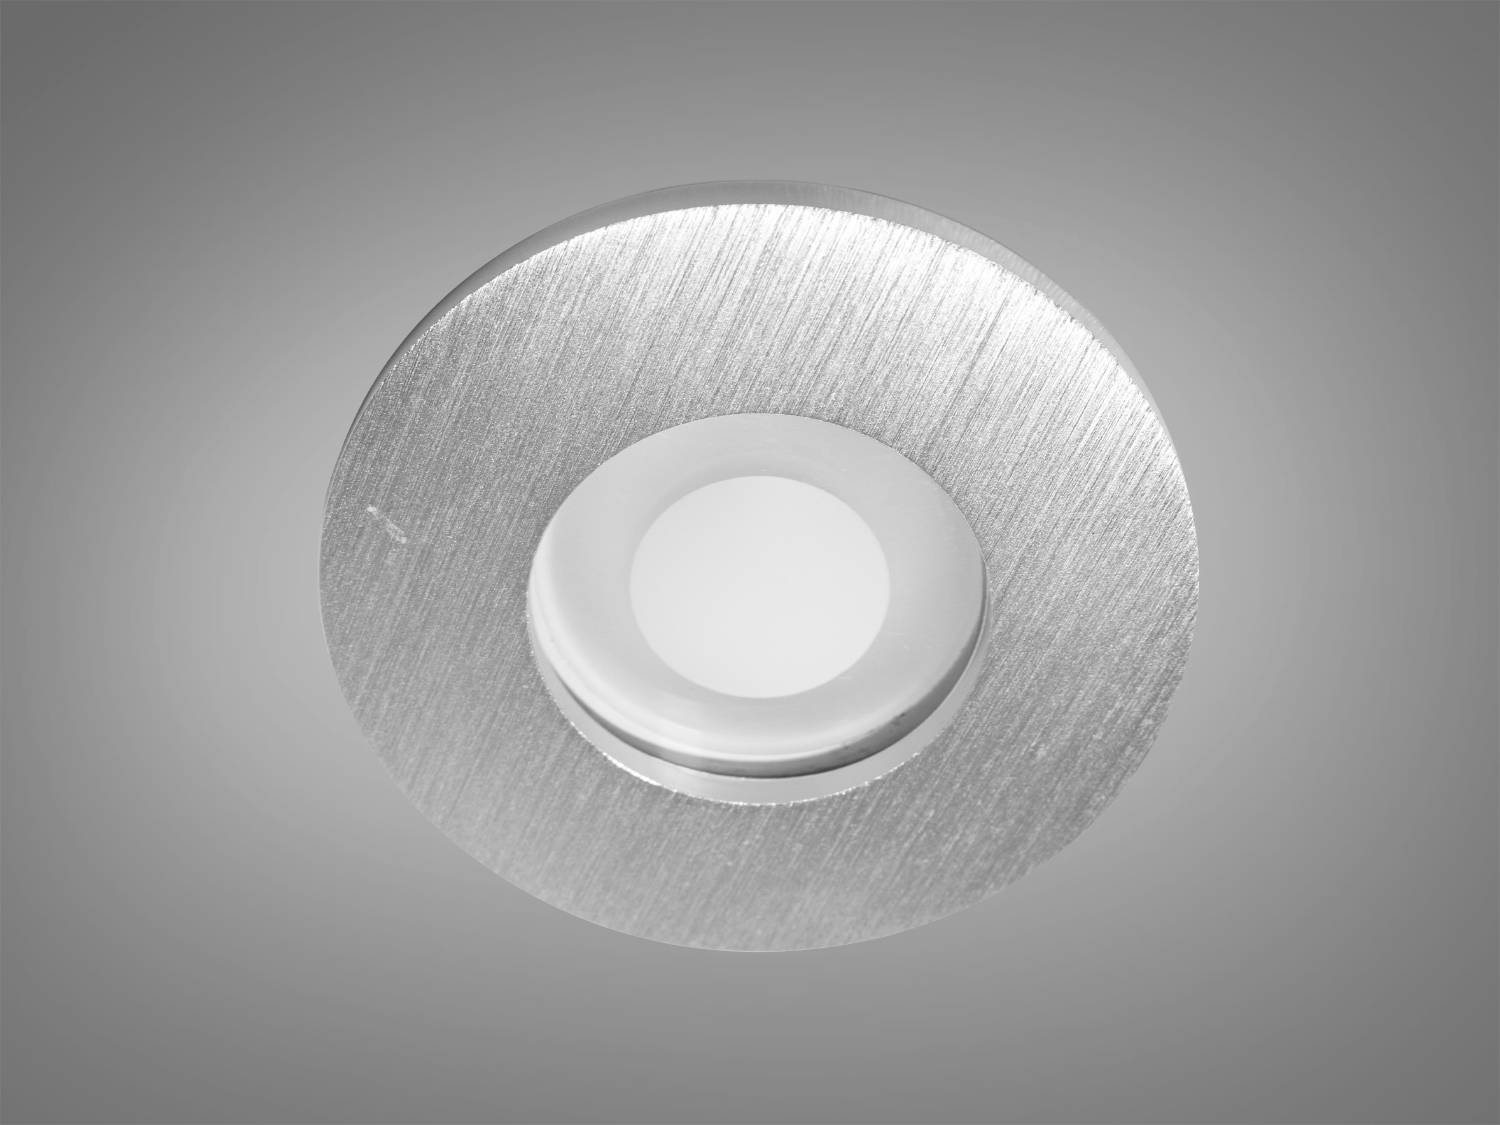 Цей точковий світильник виготовлений з алюмінію представляє собою втілення стилю та функціональності, які пропонує нова серія від ТМ 